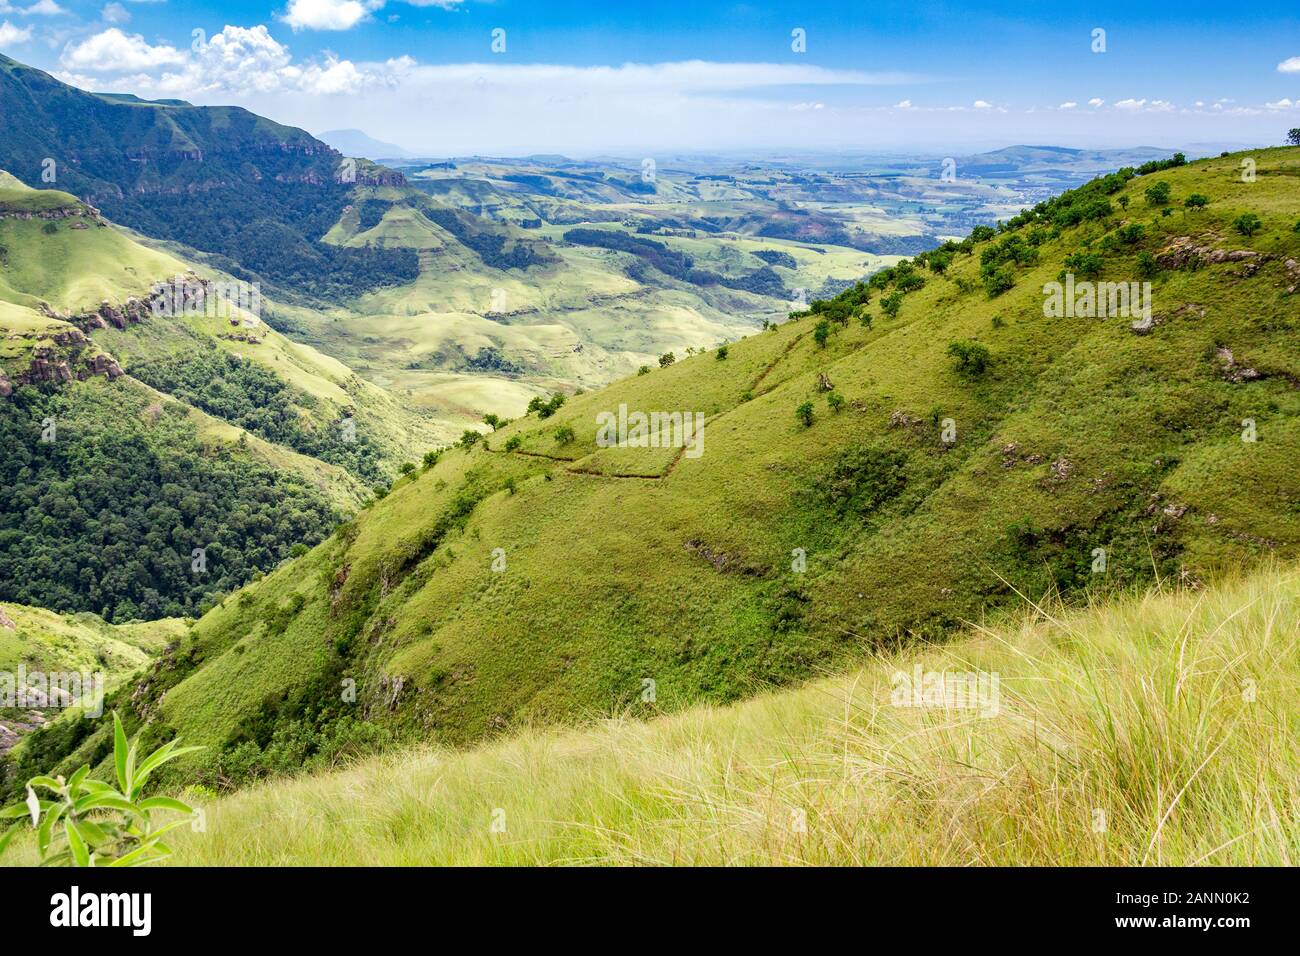 Vue panoramique sur les montagnes escarpées et vert lumineux et Meadows, journée ensoleillée, Drakensberg, Giants Castle Game Reserve, Afrique du Sud Banque D'Images